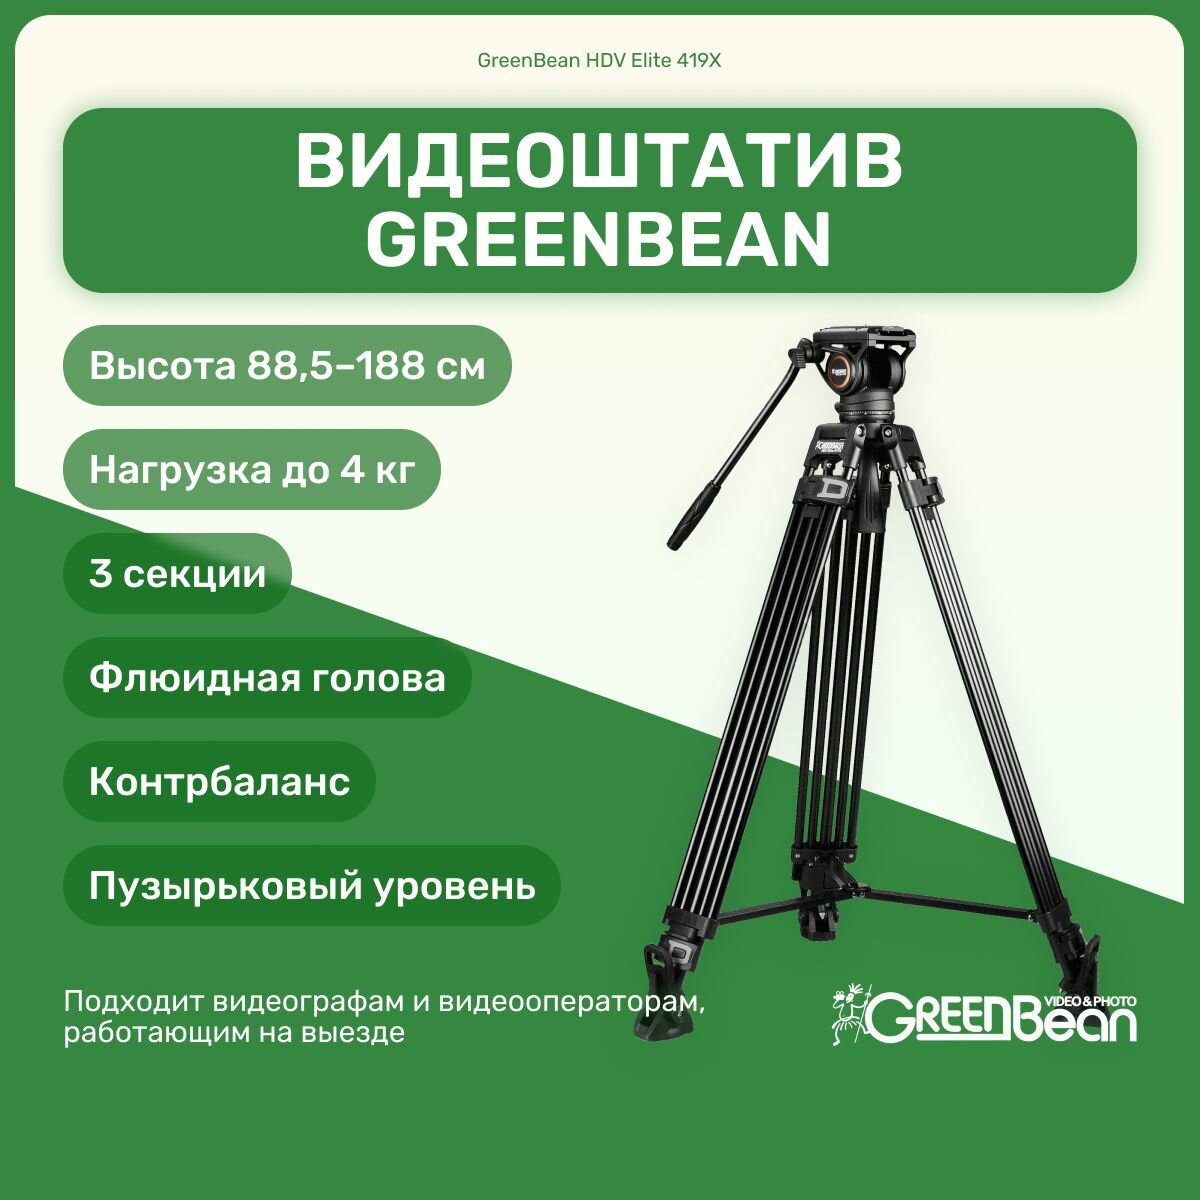 Видеоштатив GreenBean HDV Elite 419X 188 см, контрбаланс, флюидная голова, для камеры, фотоаппарата, для видео съемки, трипод